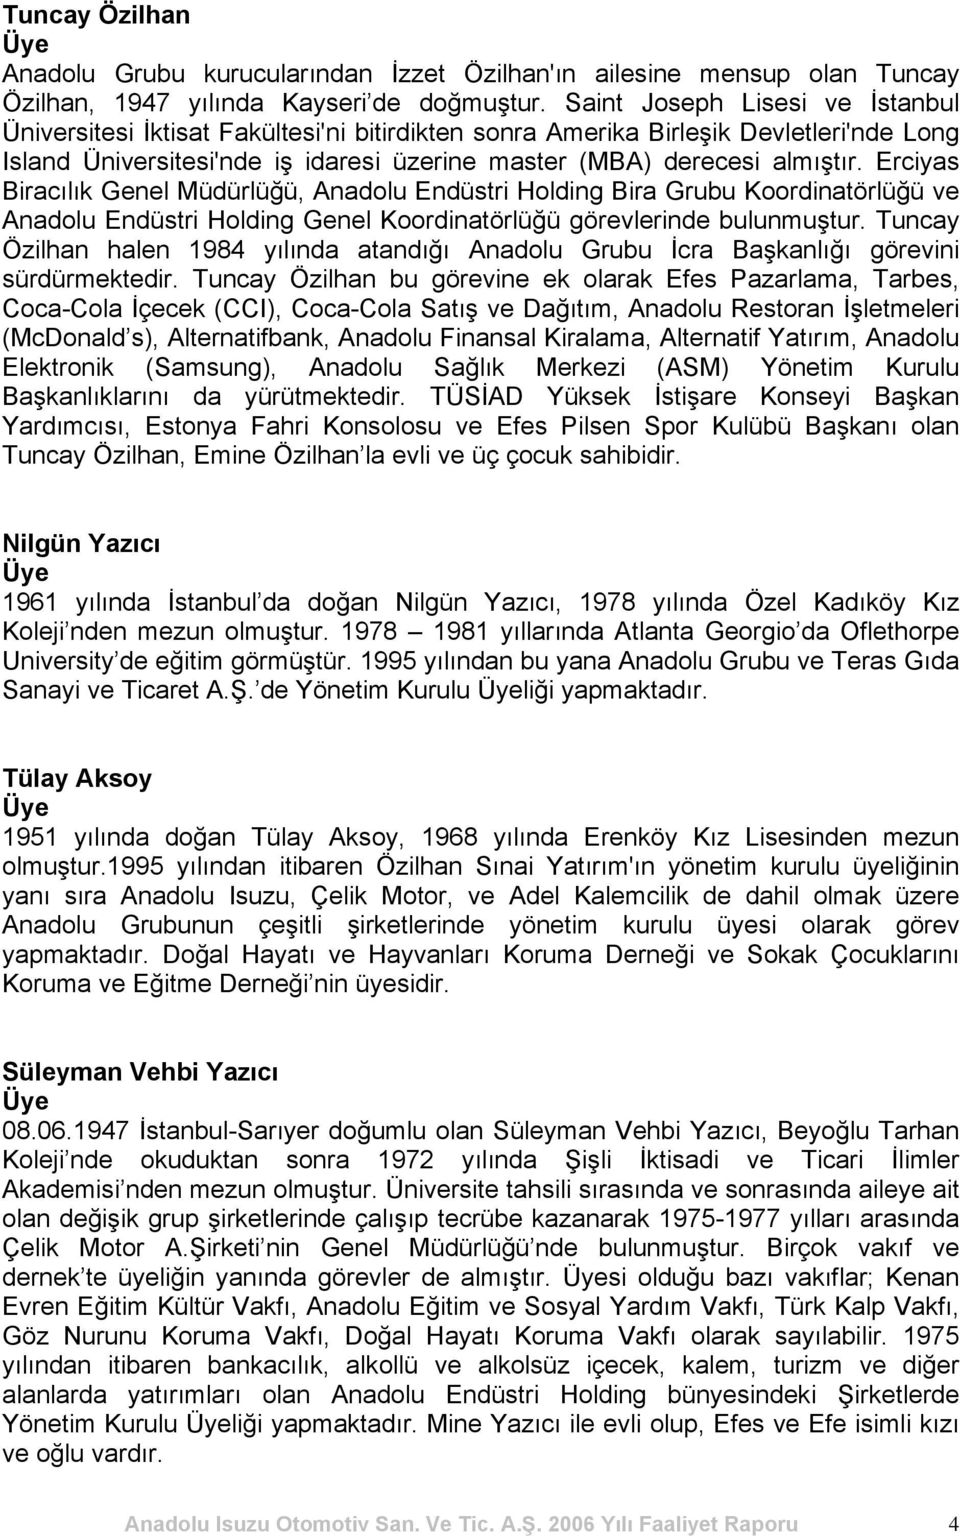 Erciyas Biracılık Genel Müdürlüğü, Anadolu Endüstri Holding Bira Grubu Koordinatörlüğü ve Anadolu Endüstri Holding Genel Koordinatörlüğü görevlerinde bulunmuştur.